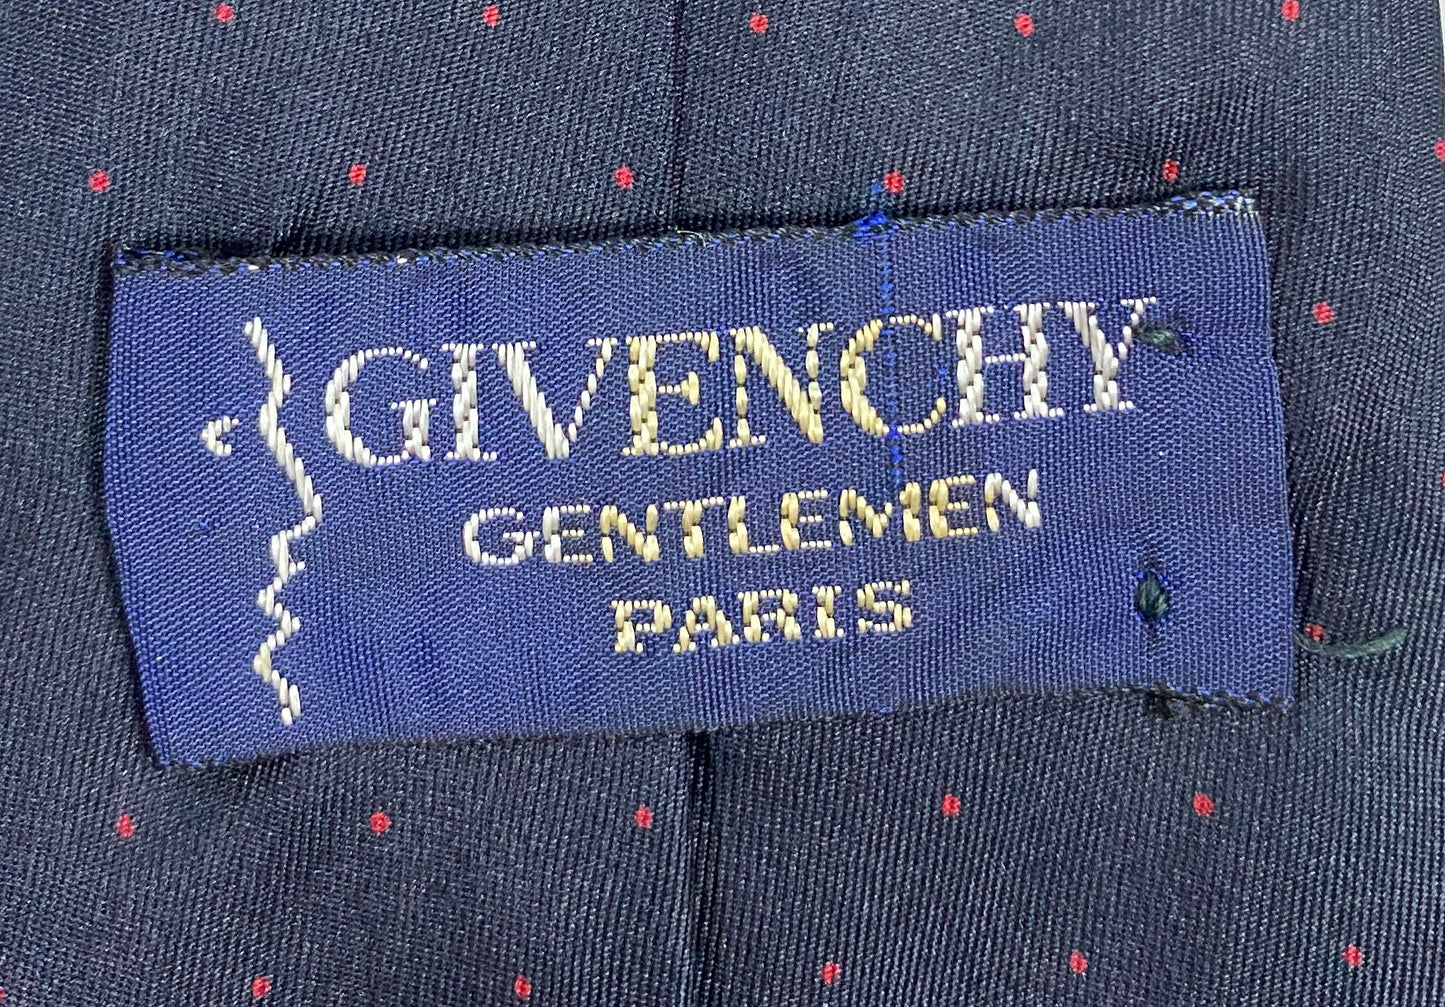 Givenchy Gentlemen Men's Necktie Black Red SKU 000284-25